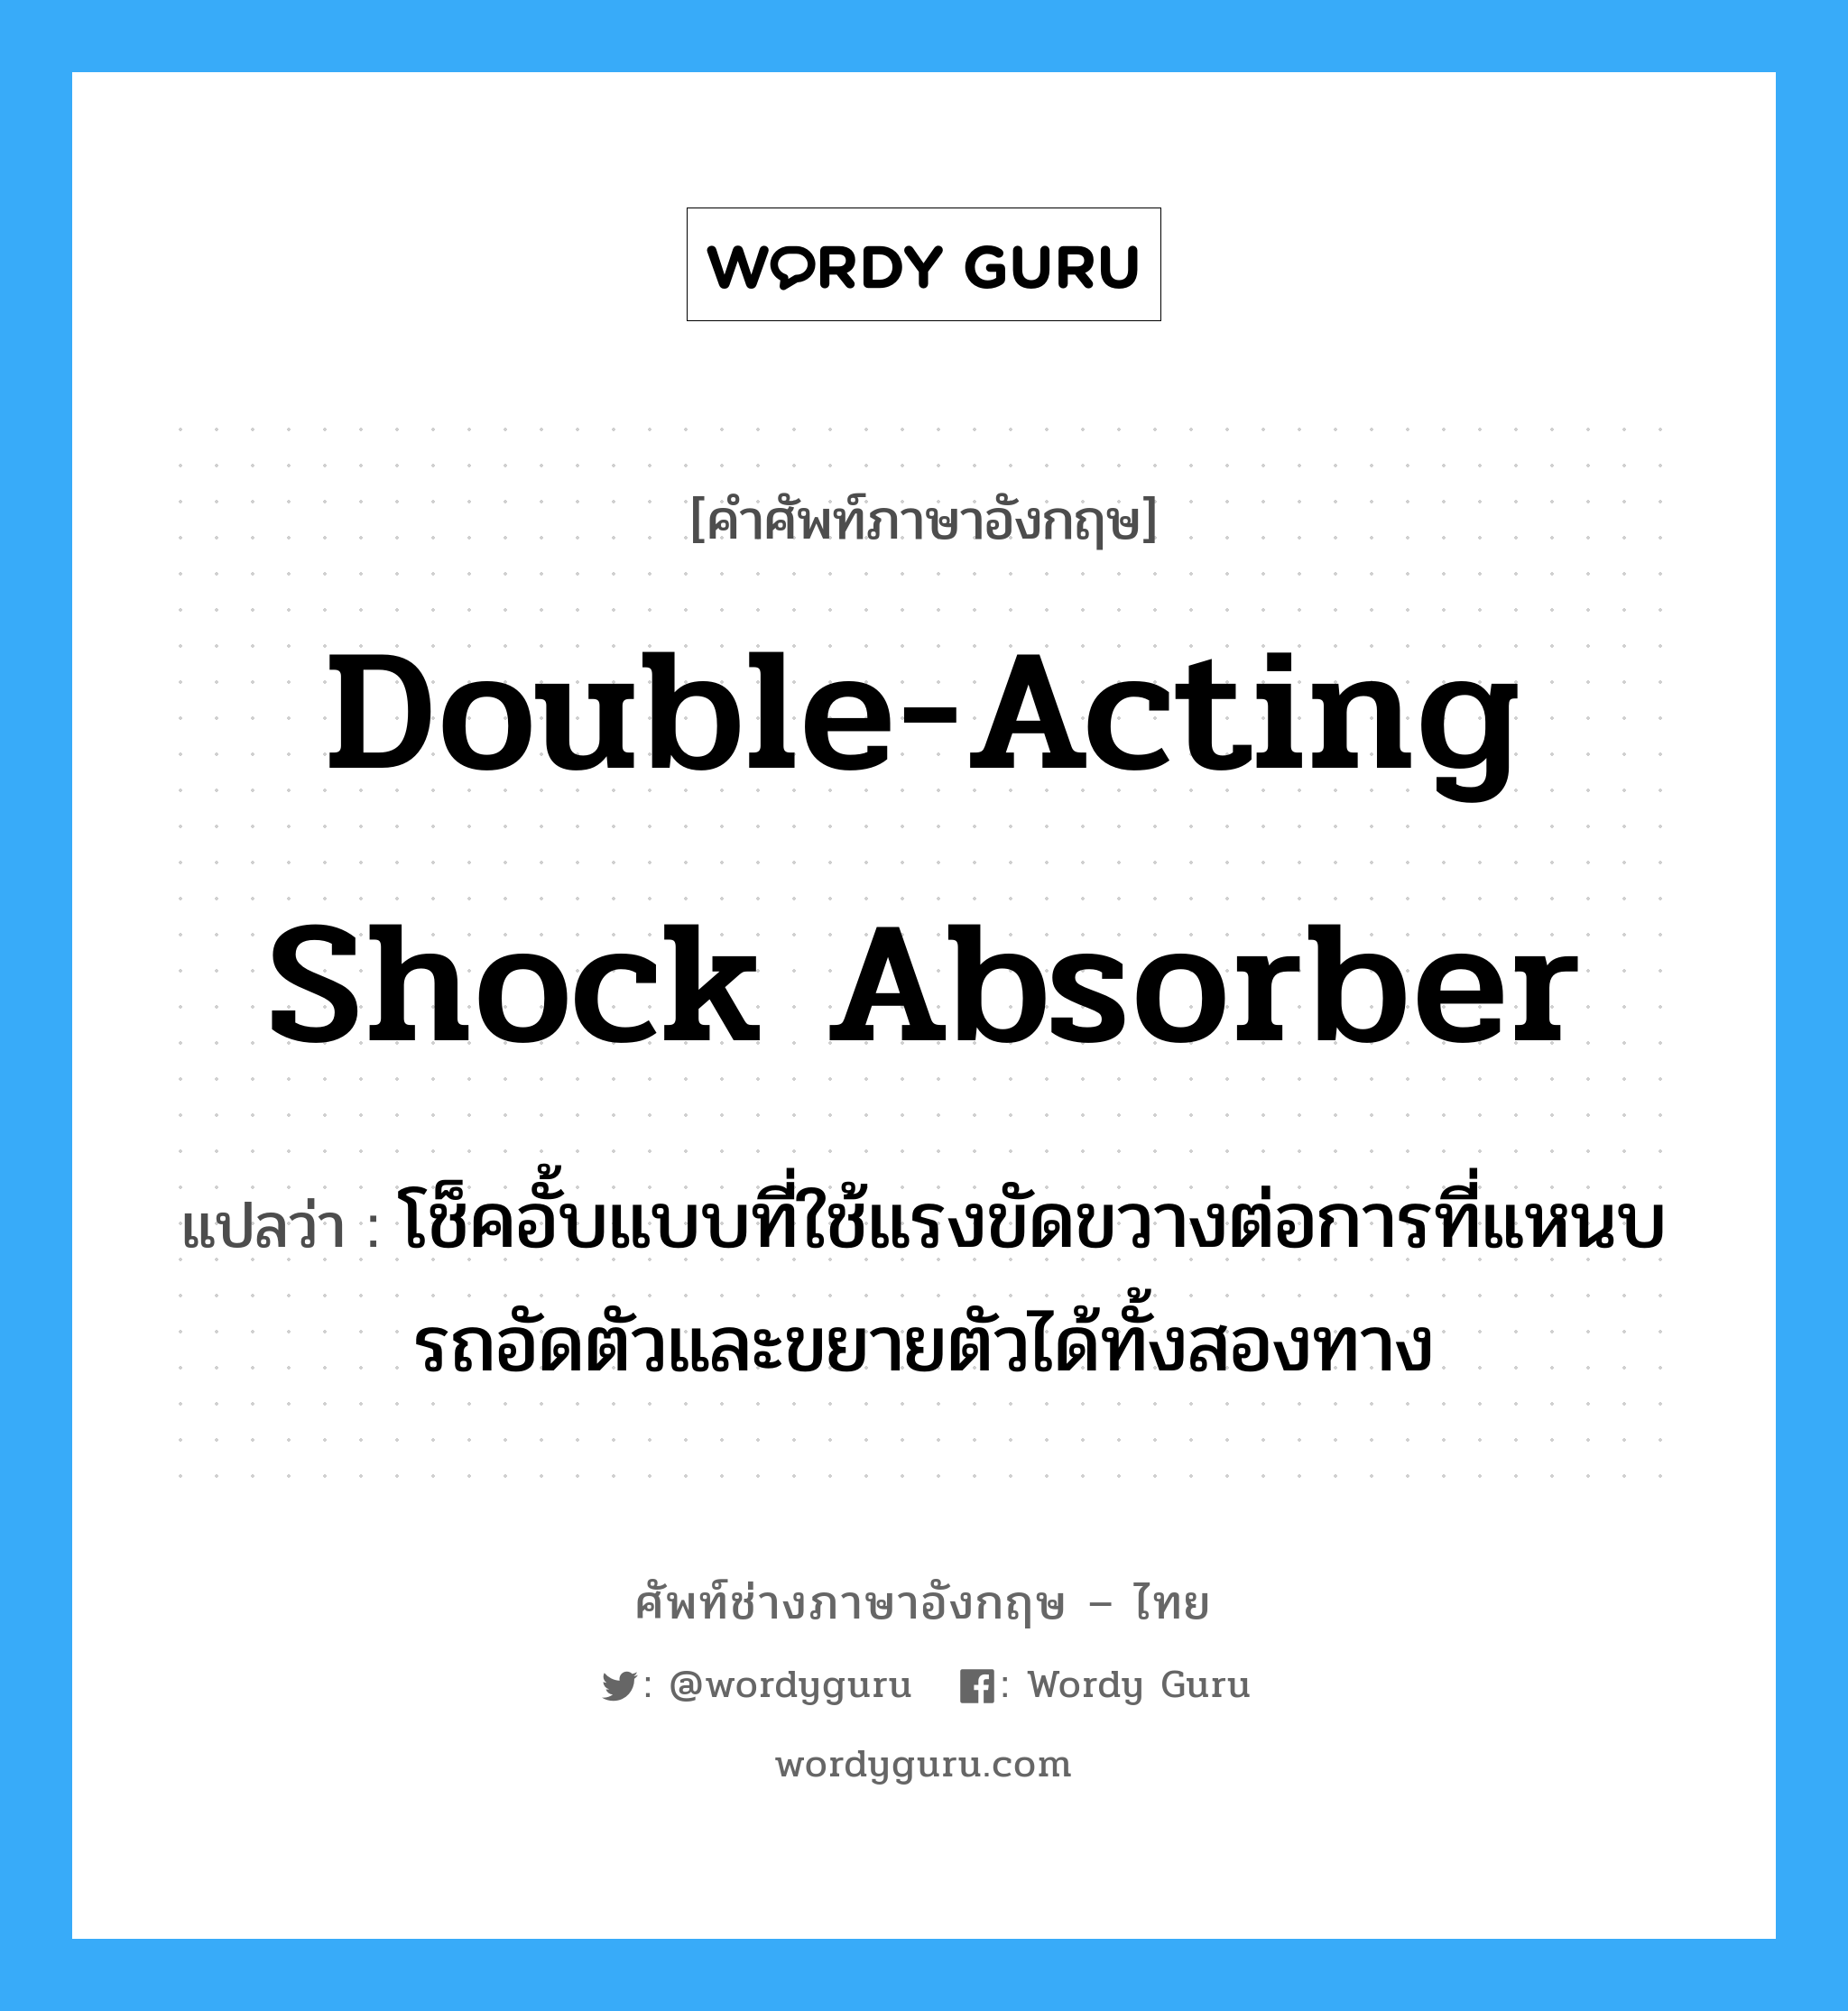 double-acting shock absorber แปลว่า?, คำศัพท์ช่างภาษาอังกฤษ - ไทย double-acting shock absorber คำศัพท์ภาษาอังกฤษ double-acting shock absorber แปลว่า โช็คอั้บแบบที่ใช้แรงขัดขวางต่อการที่แหนบรถอัดตัวและขยายตัวได้ทั้งสองทาง